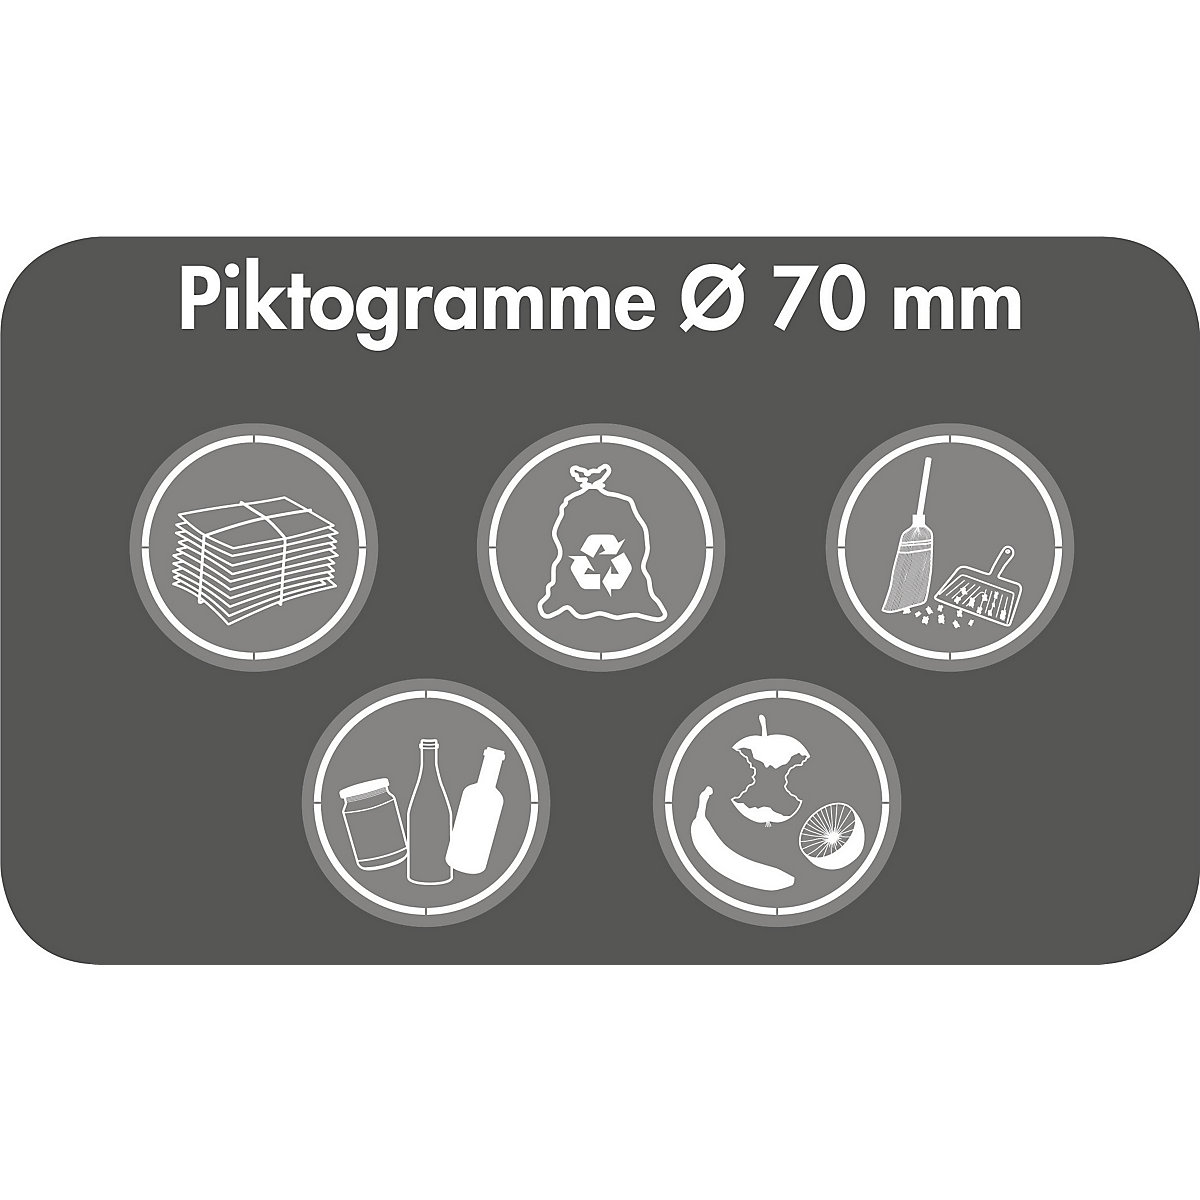 Pittogrammi, Ø 70 mm, internazionali